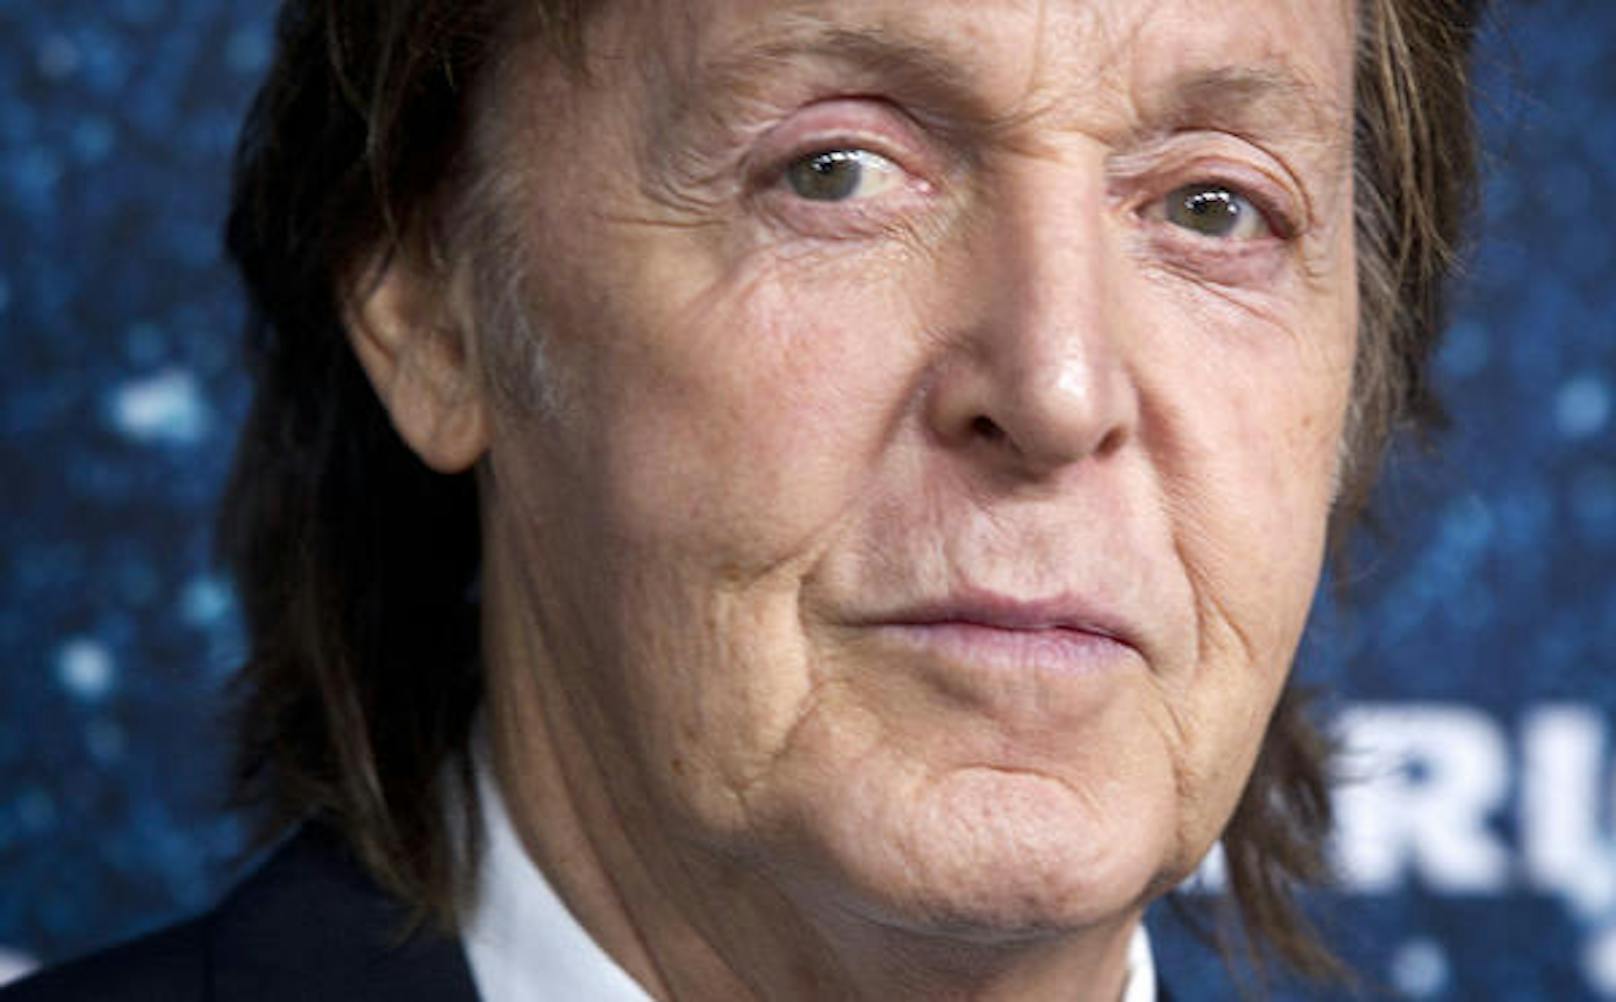 Paul McCartney steht dazu, früher gekifft zu haben, möchte es jetzt aber nicht mehr tun.